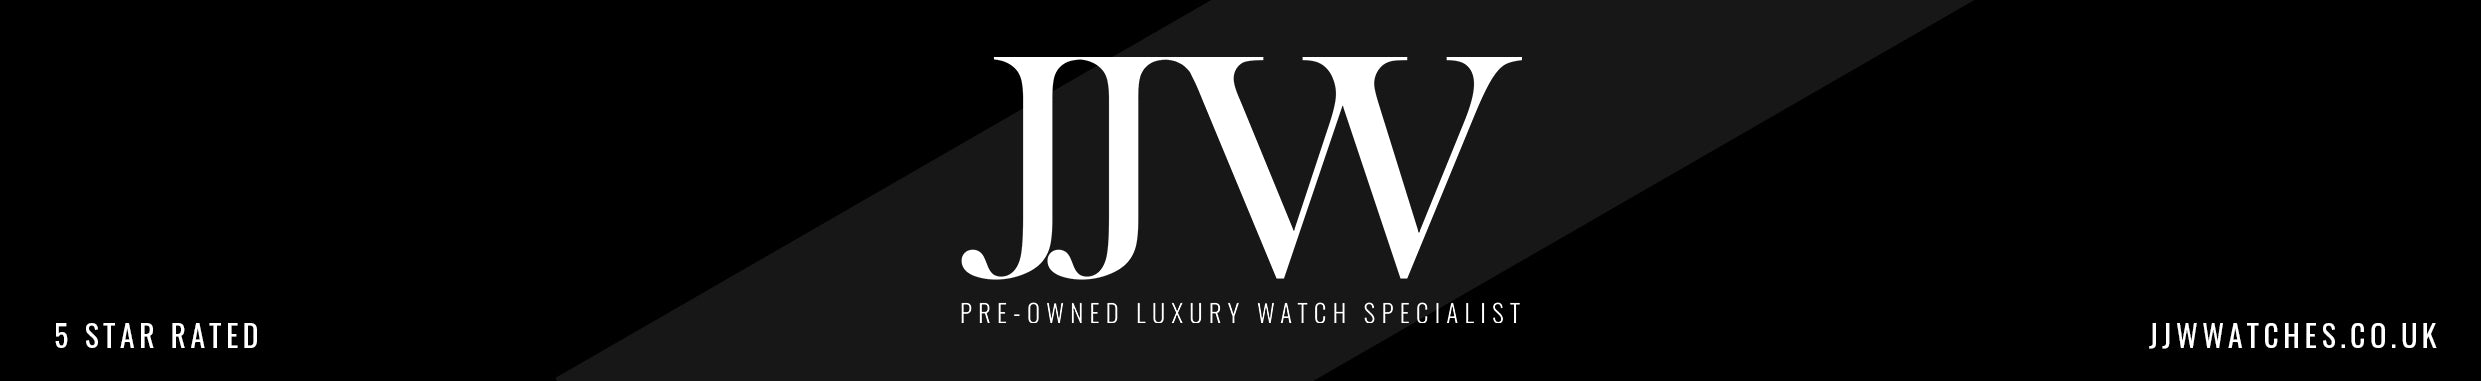 JJW Watches Rolex Specialist